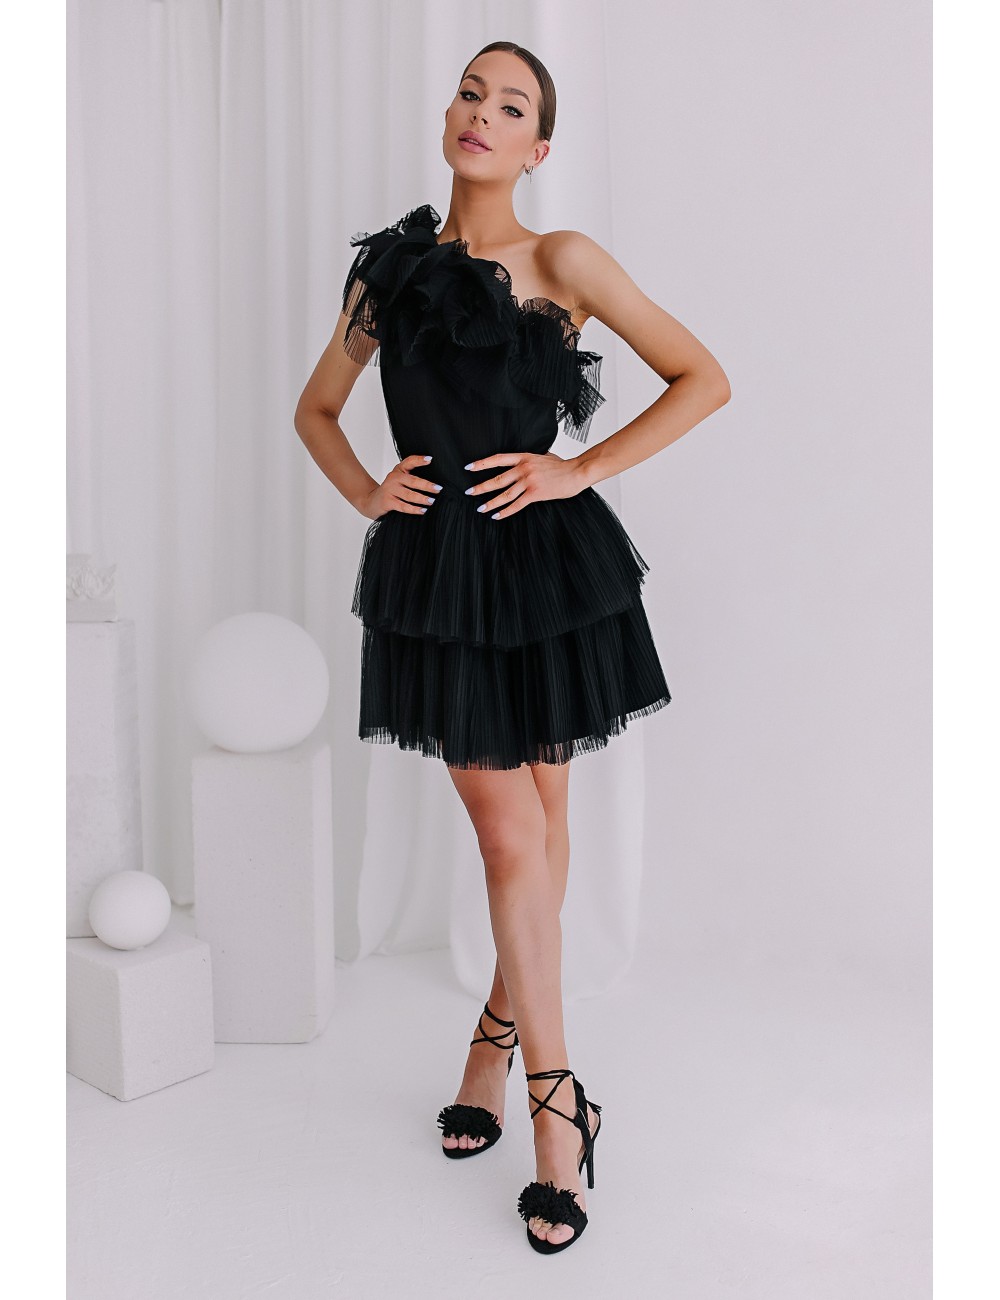 MINIMI suknelė "Black swan"